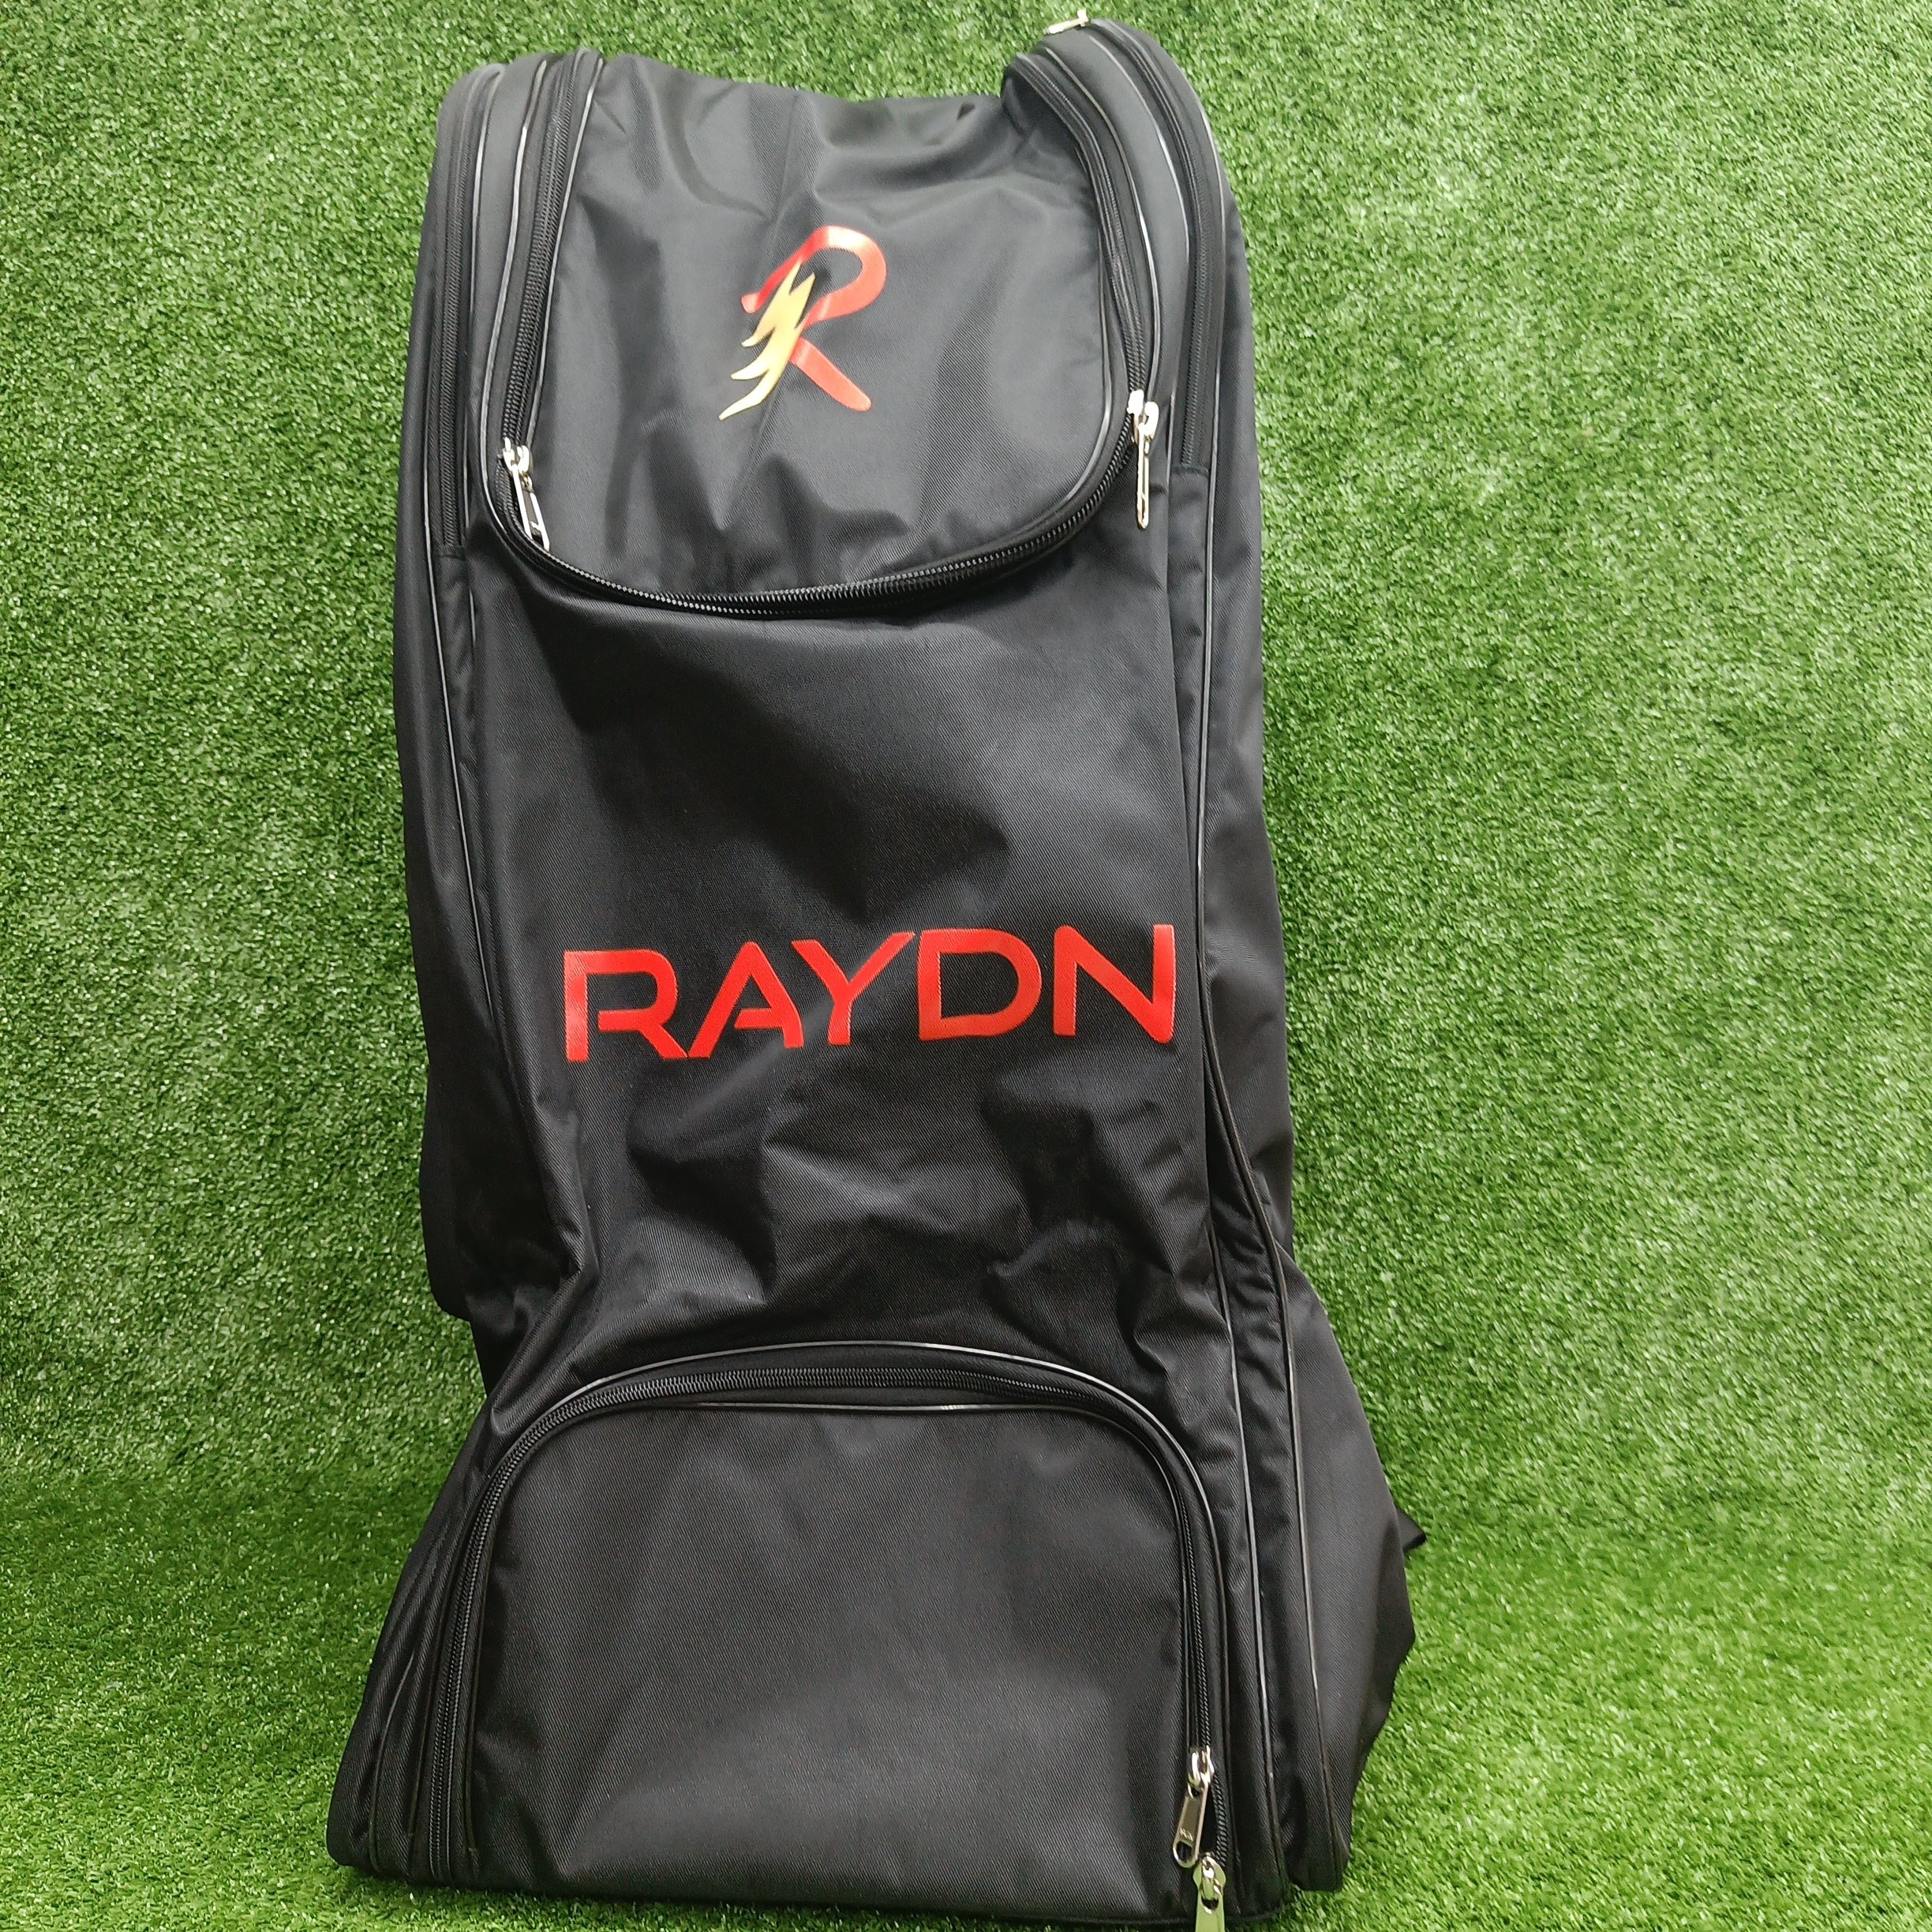 Raydn Plus Wheelie Senior Cricket Kit Bag